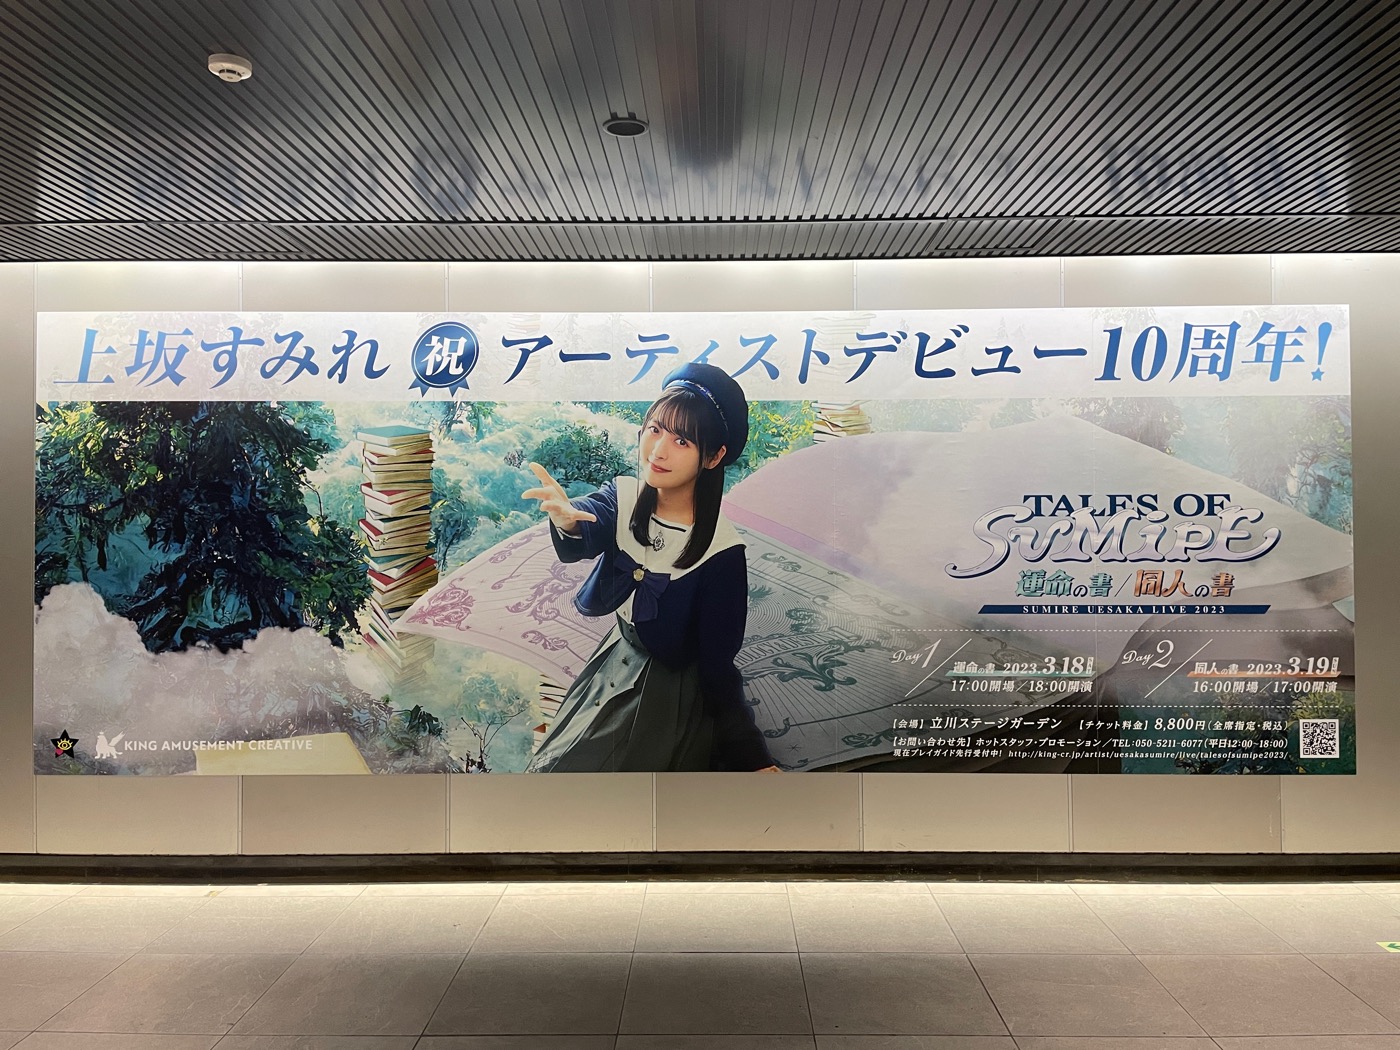 上坂すみれ、渋谷駅にアーティストデビュー10周年を記念した大型ポスターを掲出中